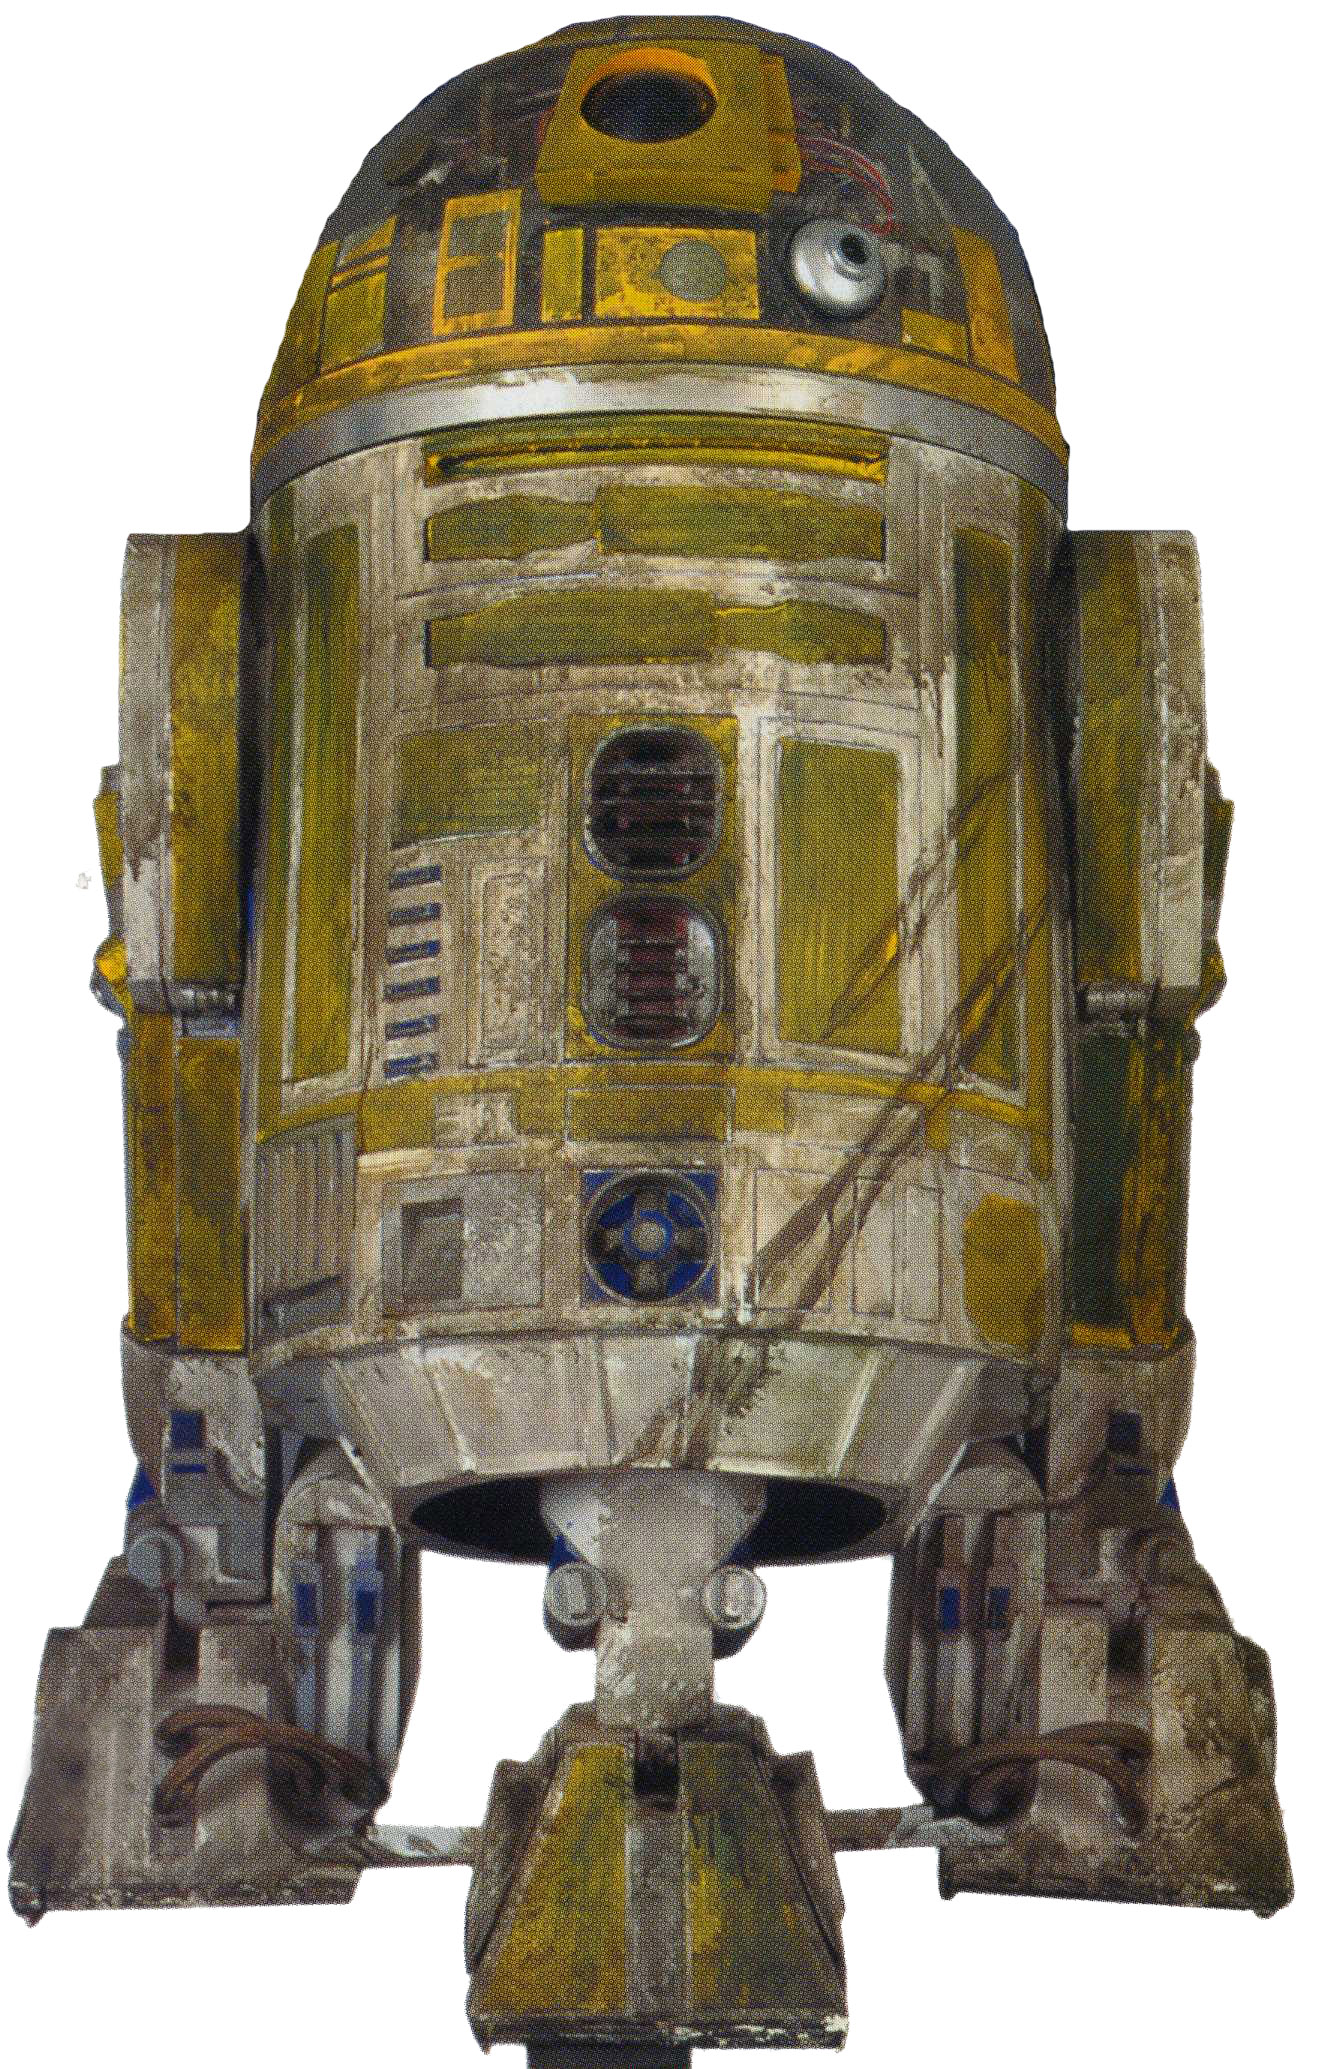 R3-T7 — жёлто-зелёный дроид-астромеханик, обитавший в развлекательном округ...